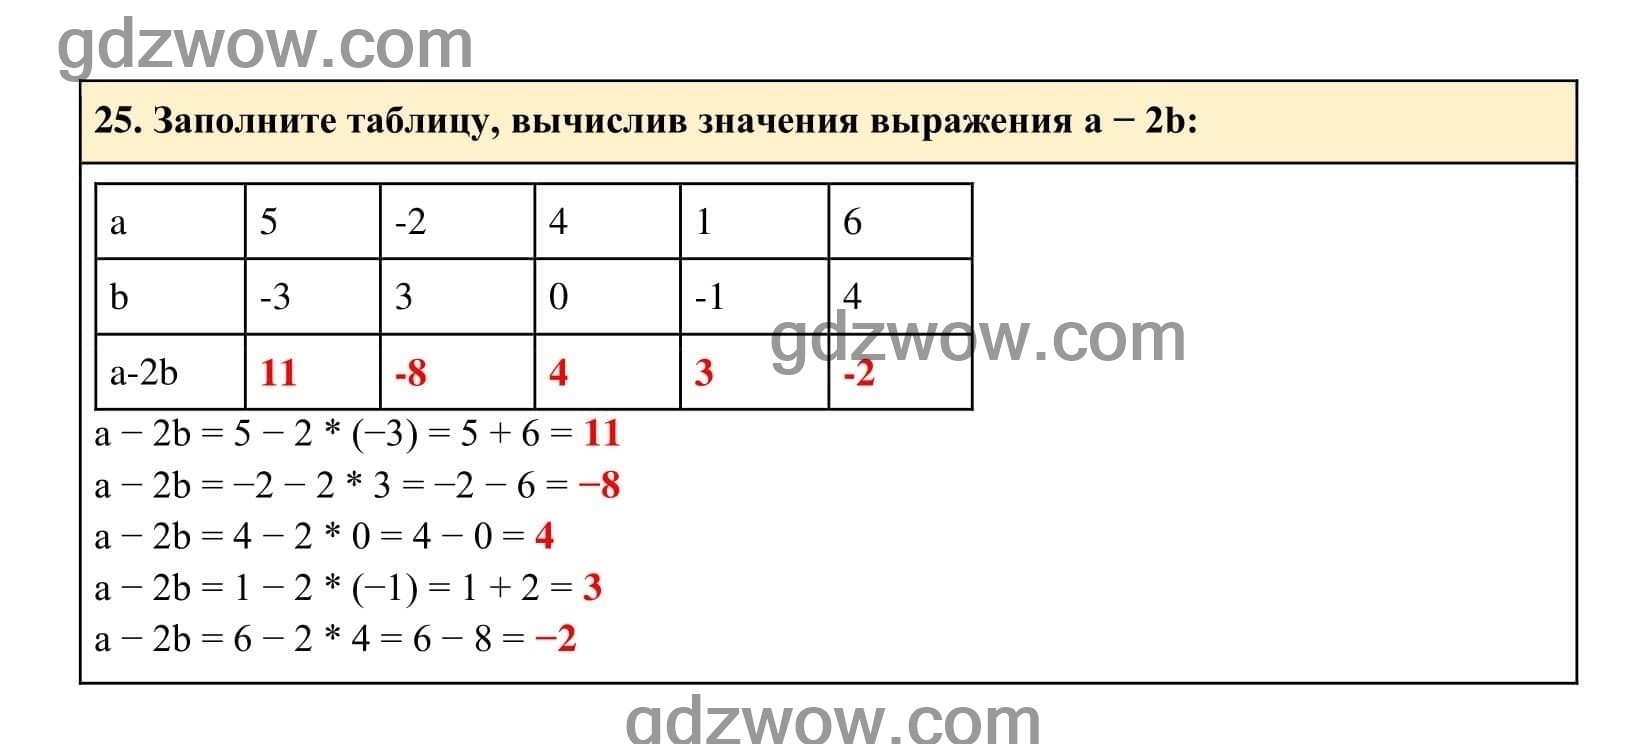 Упражнение 25 - ГДЗ по Алгебре 7 класс Учебник Макарычев (решебник) - GDZwow